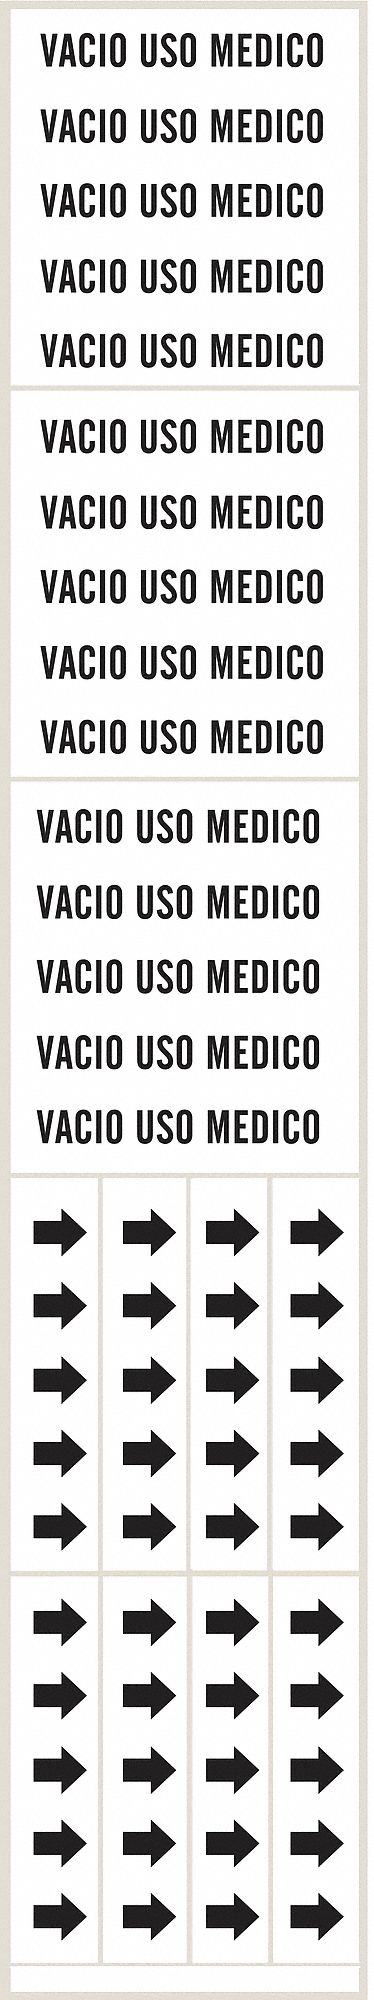 Pipe Mrkr,Vacio USO Medico,Wht,to 3/4 In